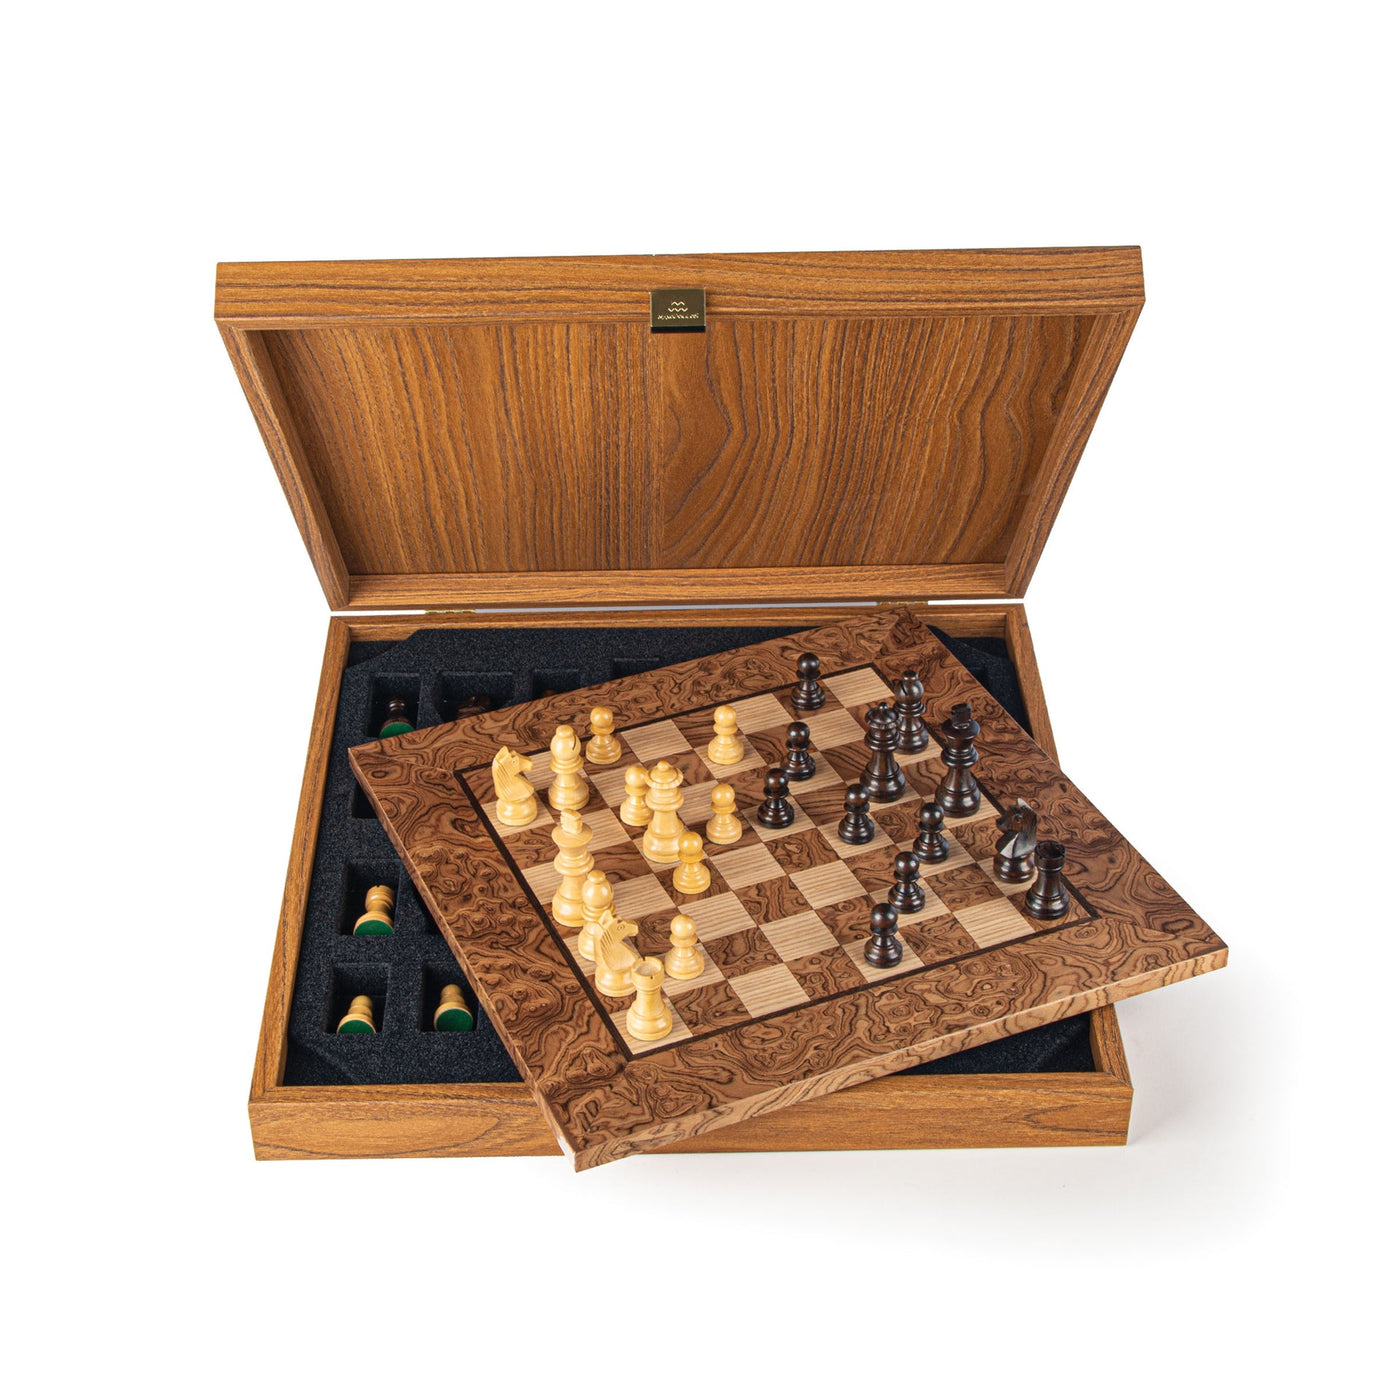 Wooden Chess set Walnut Burl Chessboard 34cm with Staunton Chessmen